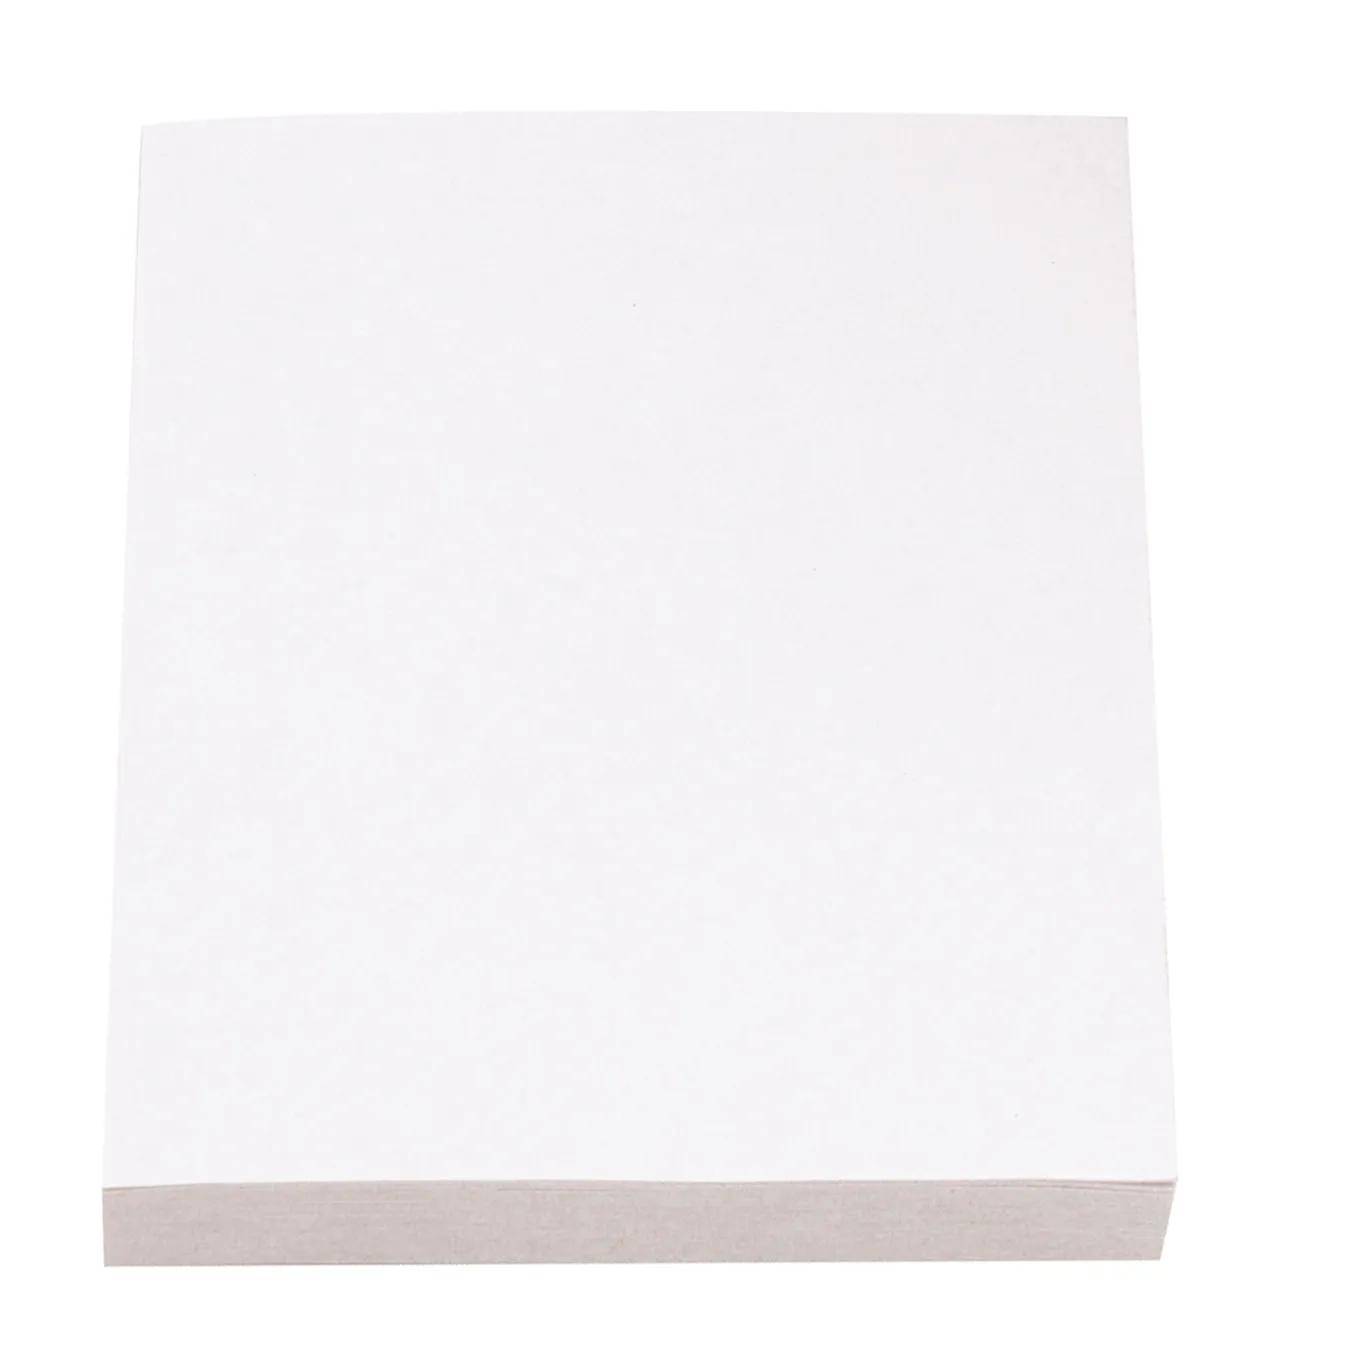 Souvenir® Sticky Note™ 2" x 3" Pad, 25 sheet